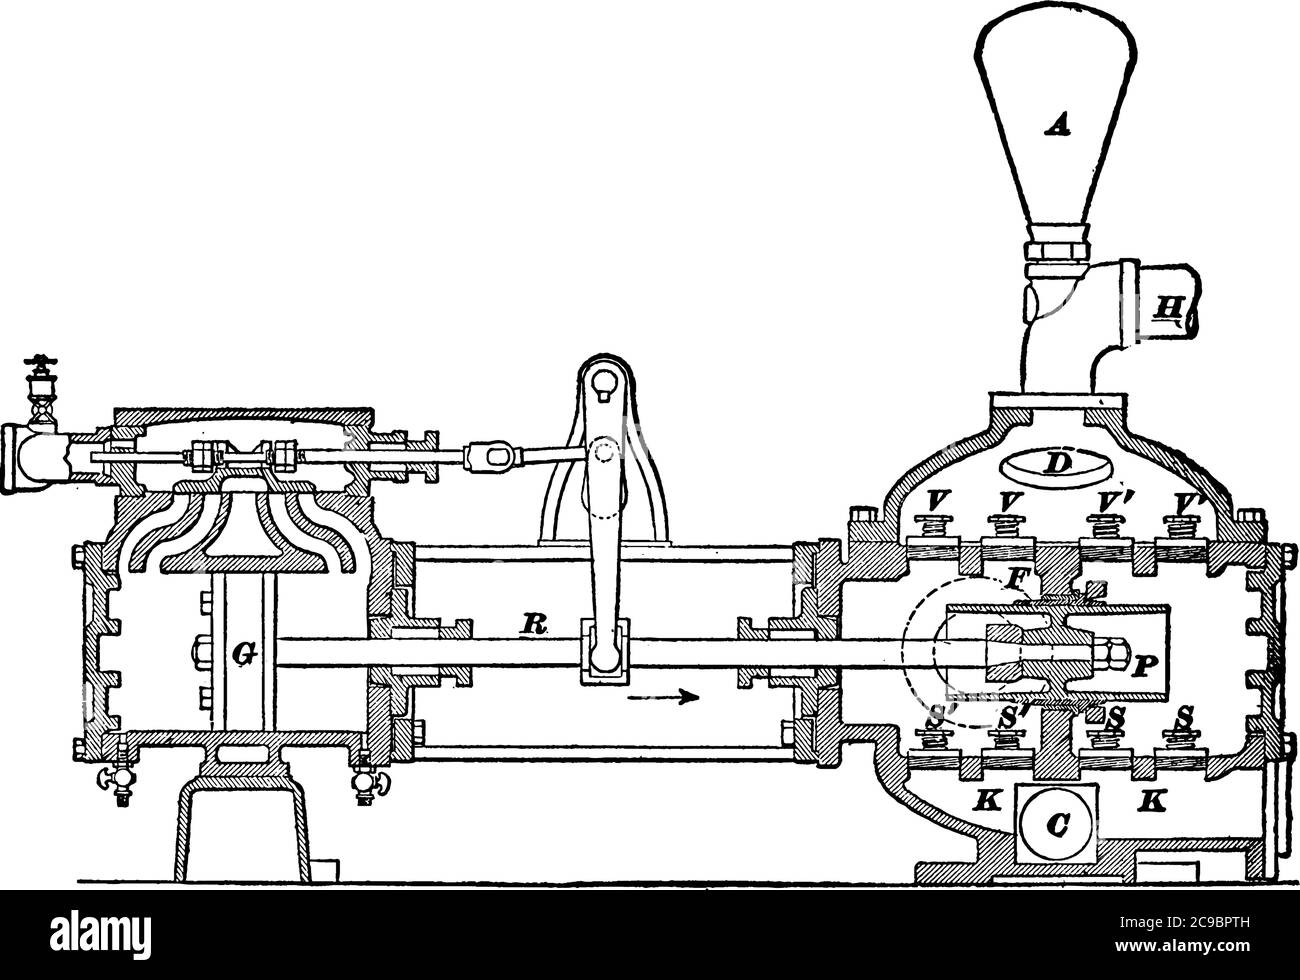 Représentation type d'une section d'une pompe à vapeur à double effet, montrant les cylindres de vapeur et d'eau, le dessin de ligne vintage ou la gravure illustrae Illustration de Vecteur